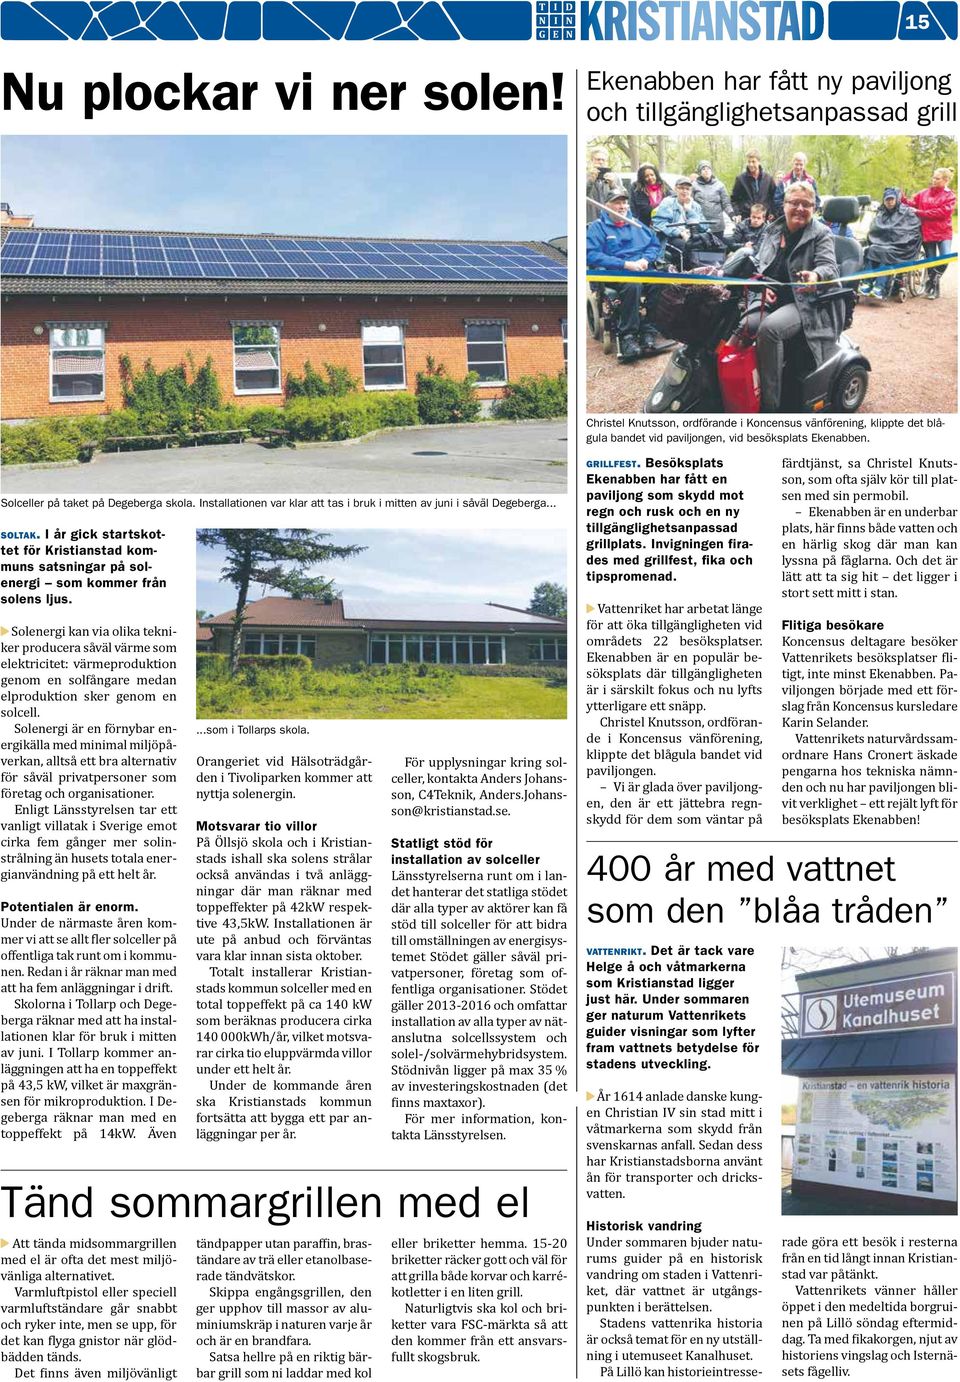 Solceller på taket på Degeberga skola. Installationen var klar att tas i bruk i mitten av juni i såväl Degeberga... soltak.